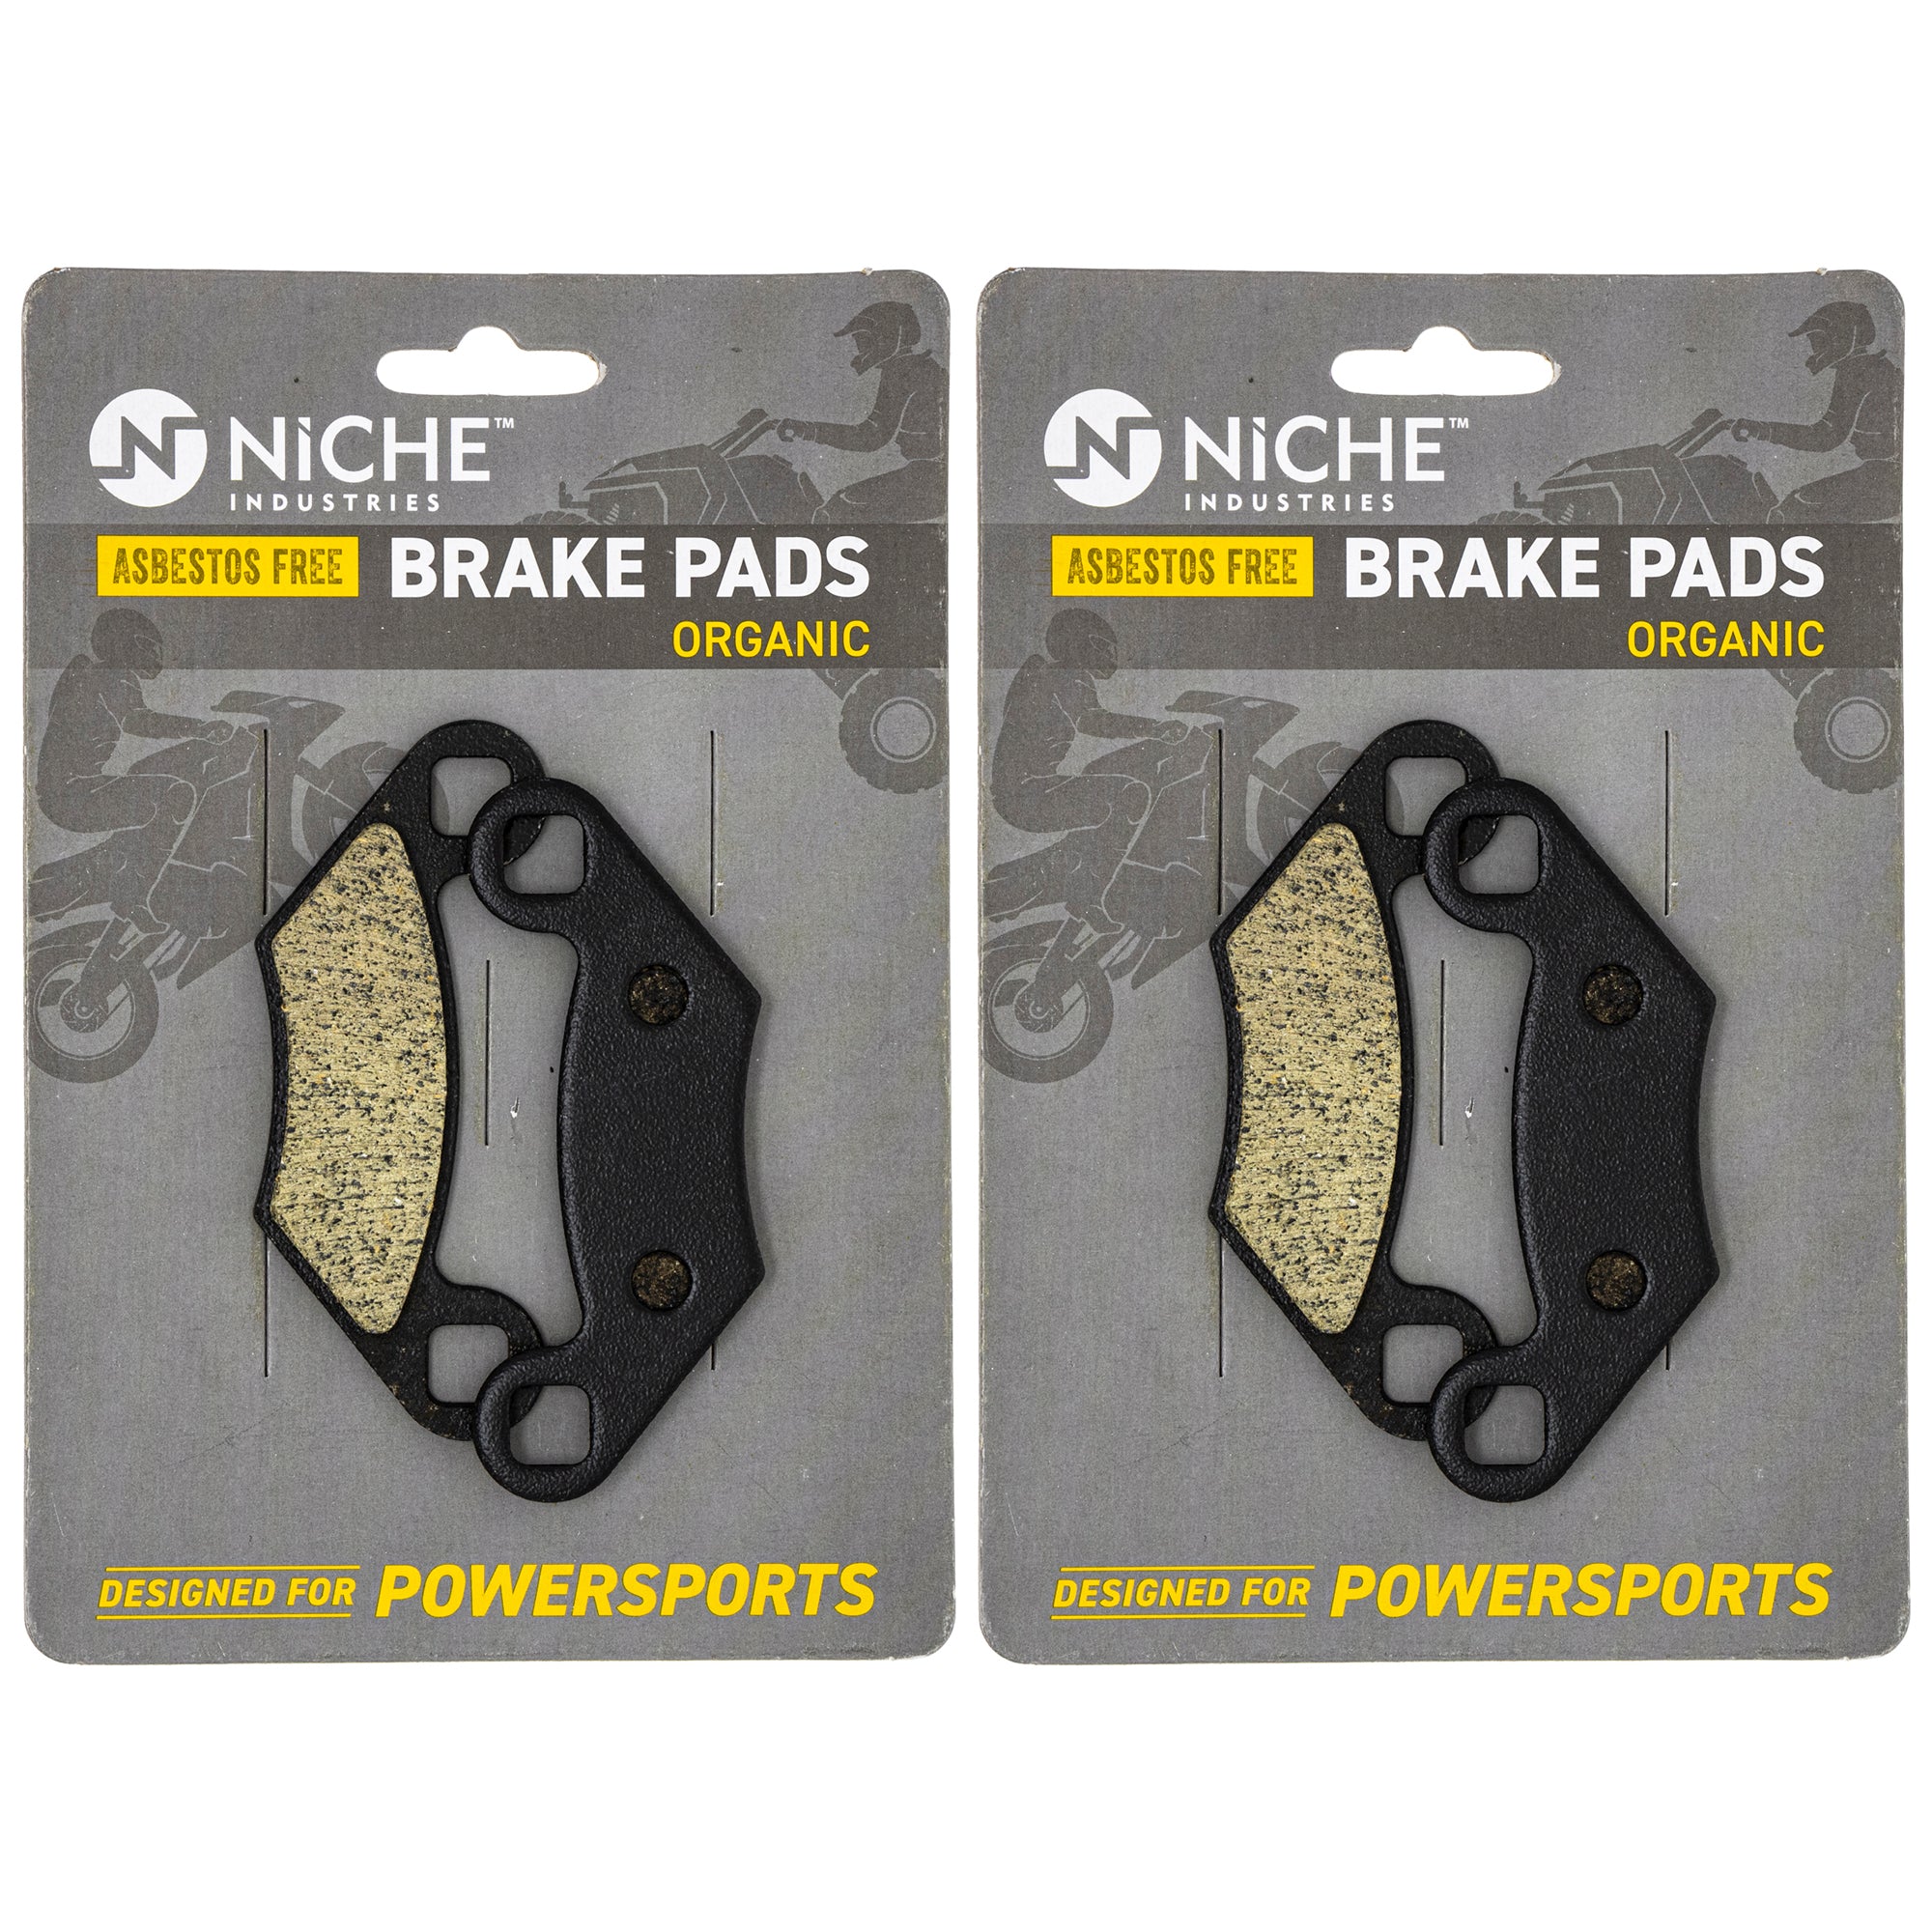 NICHE MK1001552 Brake Pad Kit Front/Rear for Polaris Xpress